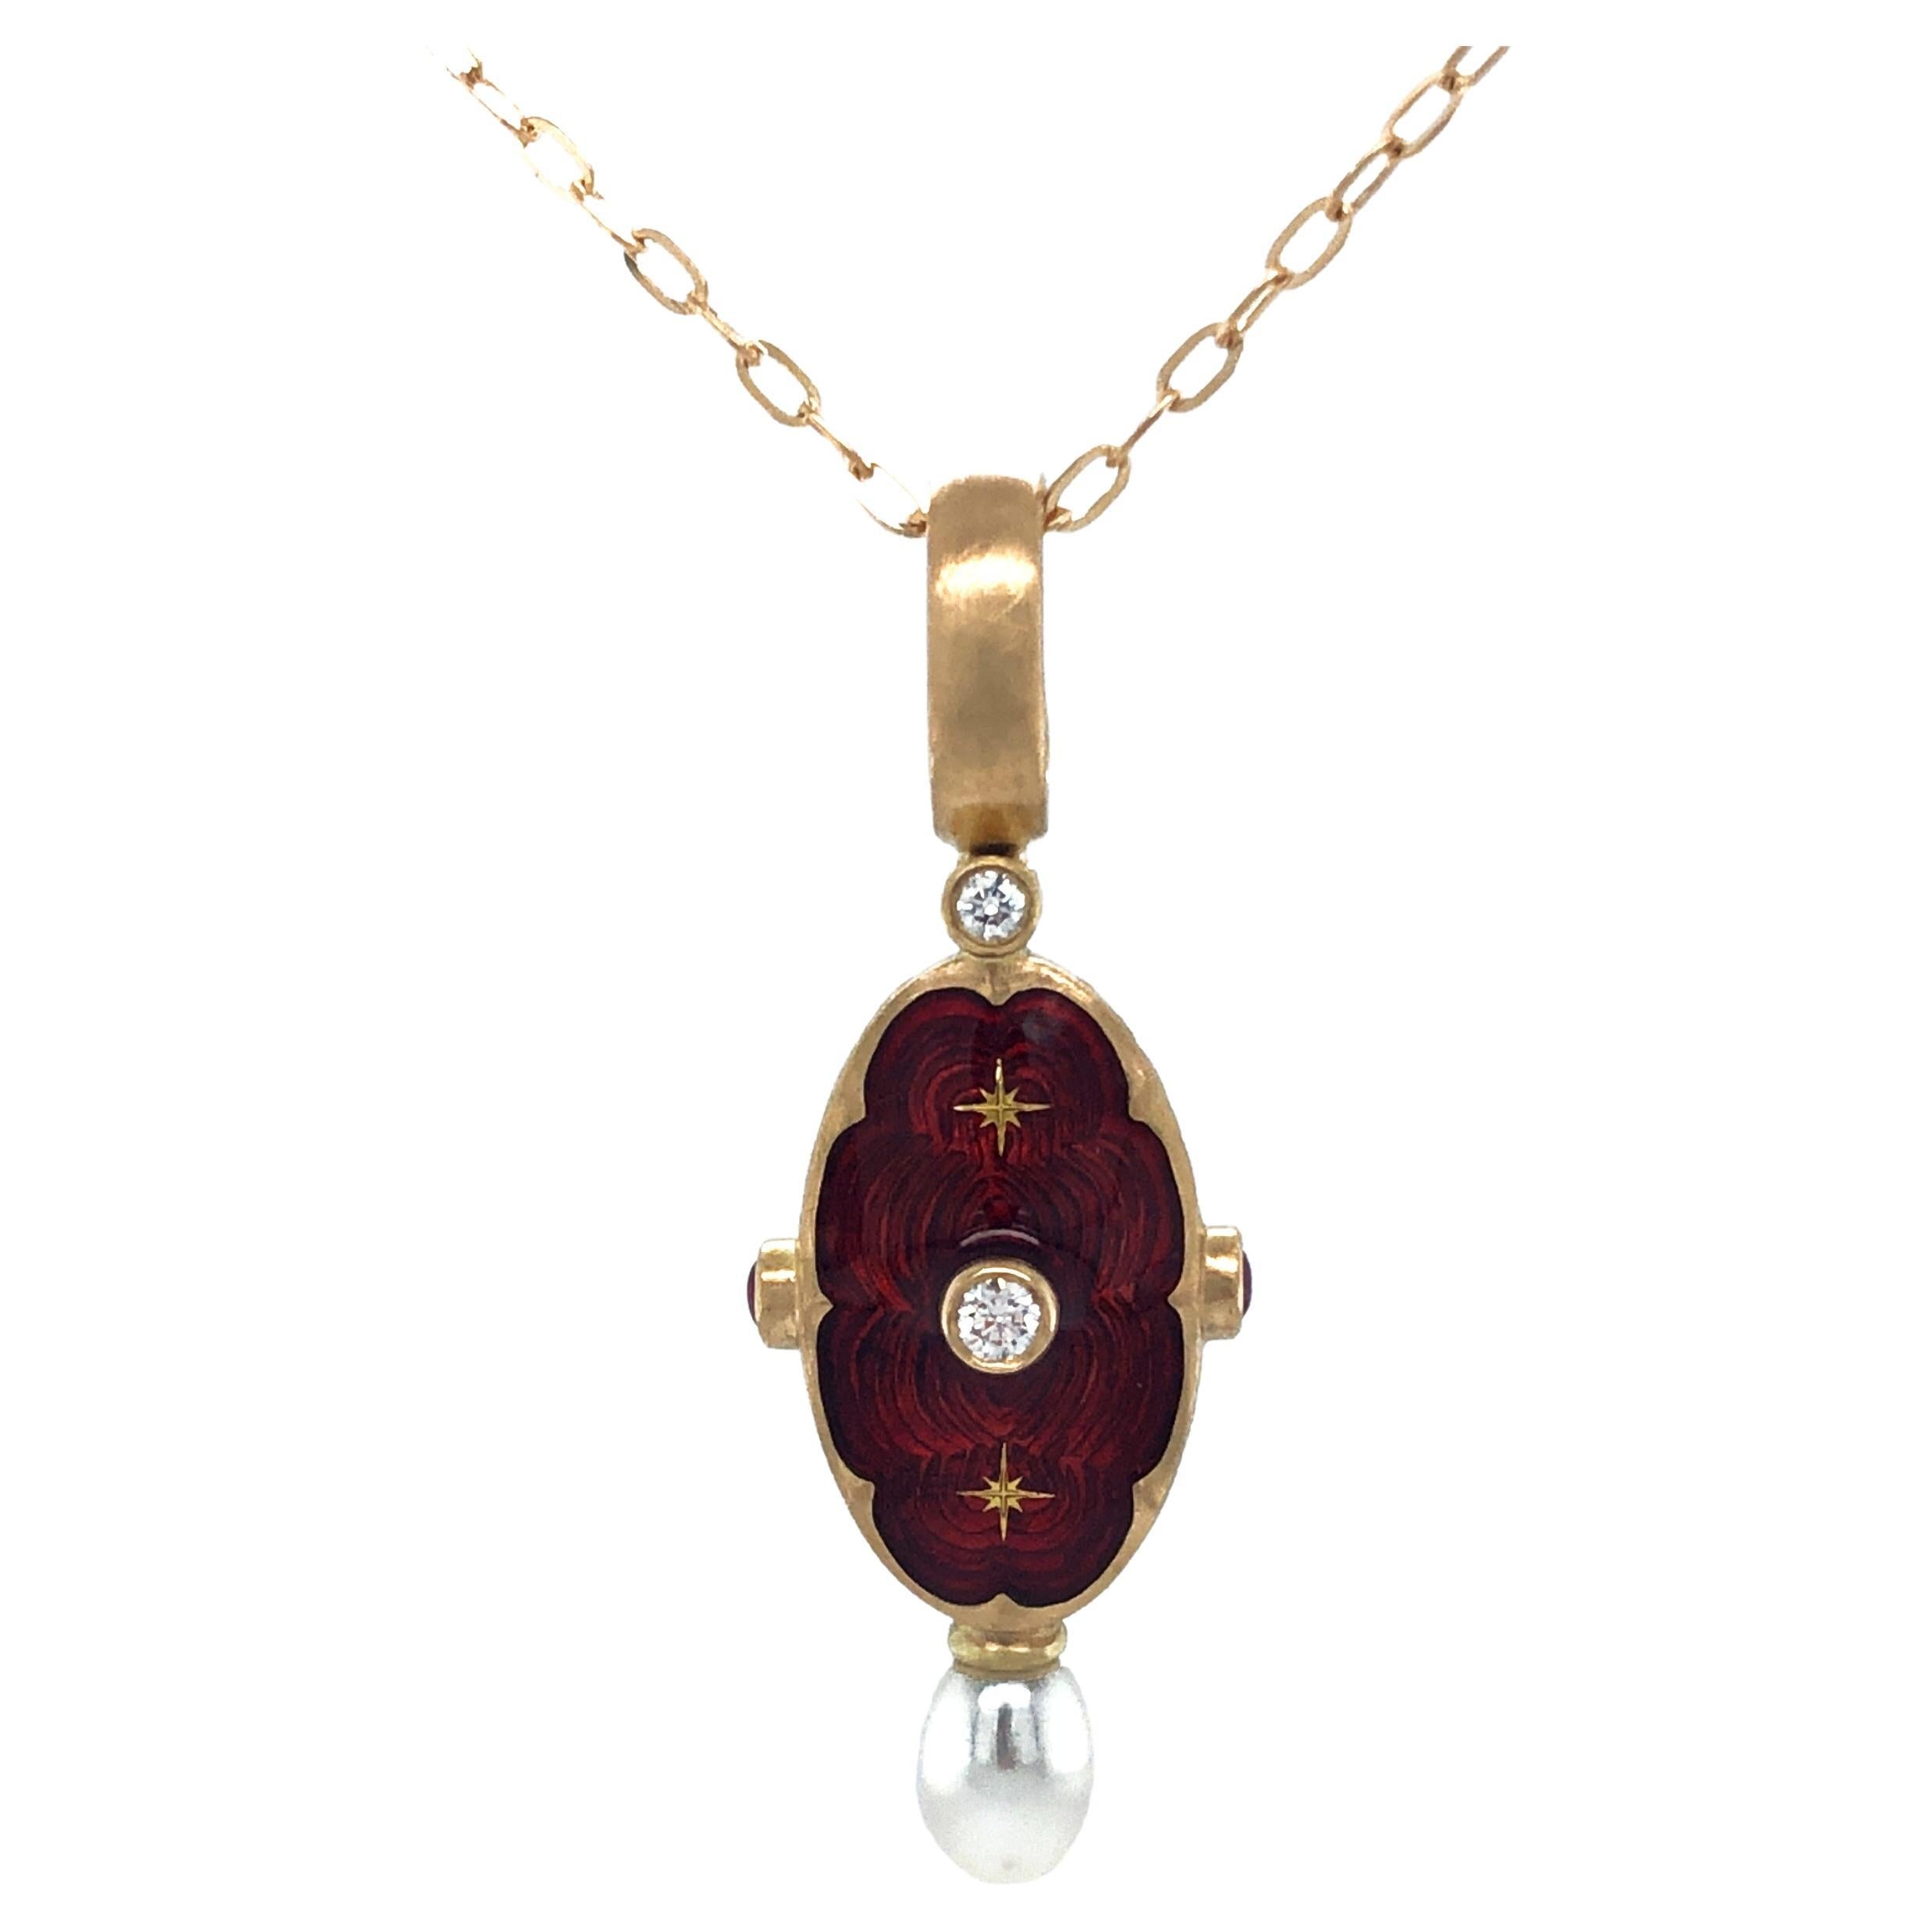 Collier pendentif ovale en or jaune 18 carats avec 2 rubis, 1 perle et un paillon en mail rouge